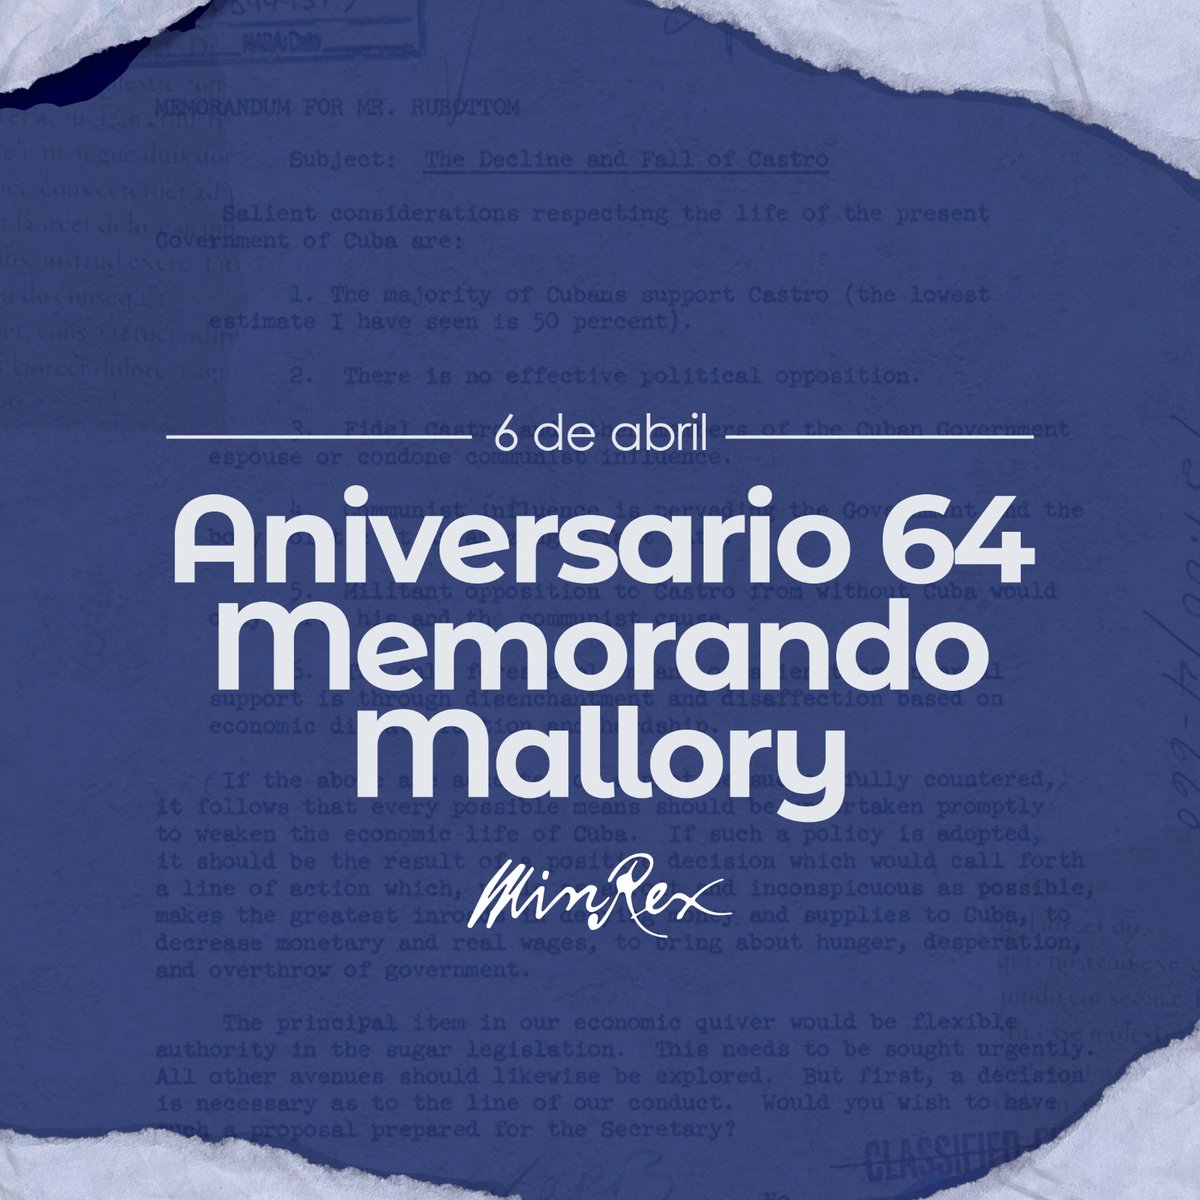 Hoy se cumplen 64 años de la promulgación del Memorando Mallory. El gobierno de EEUU dejó sentado por escrito los fundamentos de su genocida política de bloqueo 🆚 #Cuba 🇨🇺 y aún esta vigente, junto a otros instrumentos indirectos de agresión. #MejorSinBloqueo